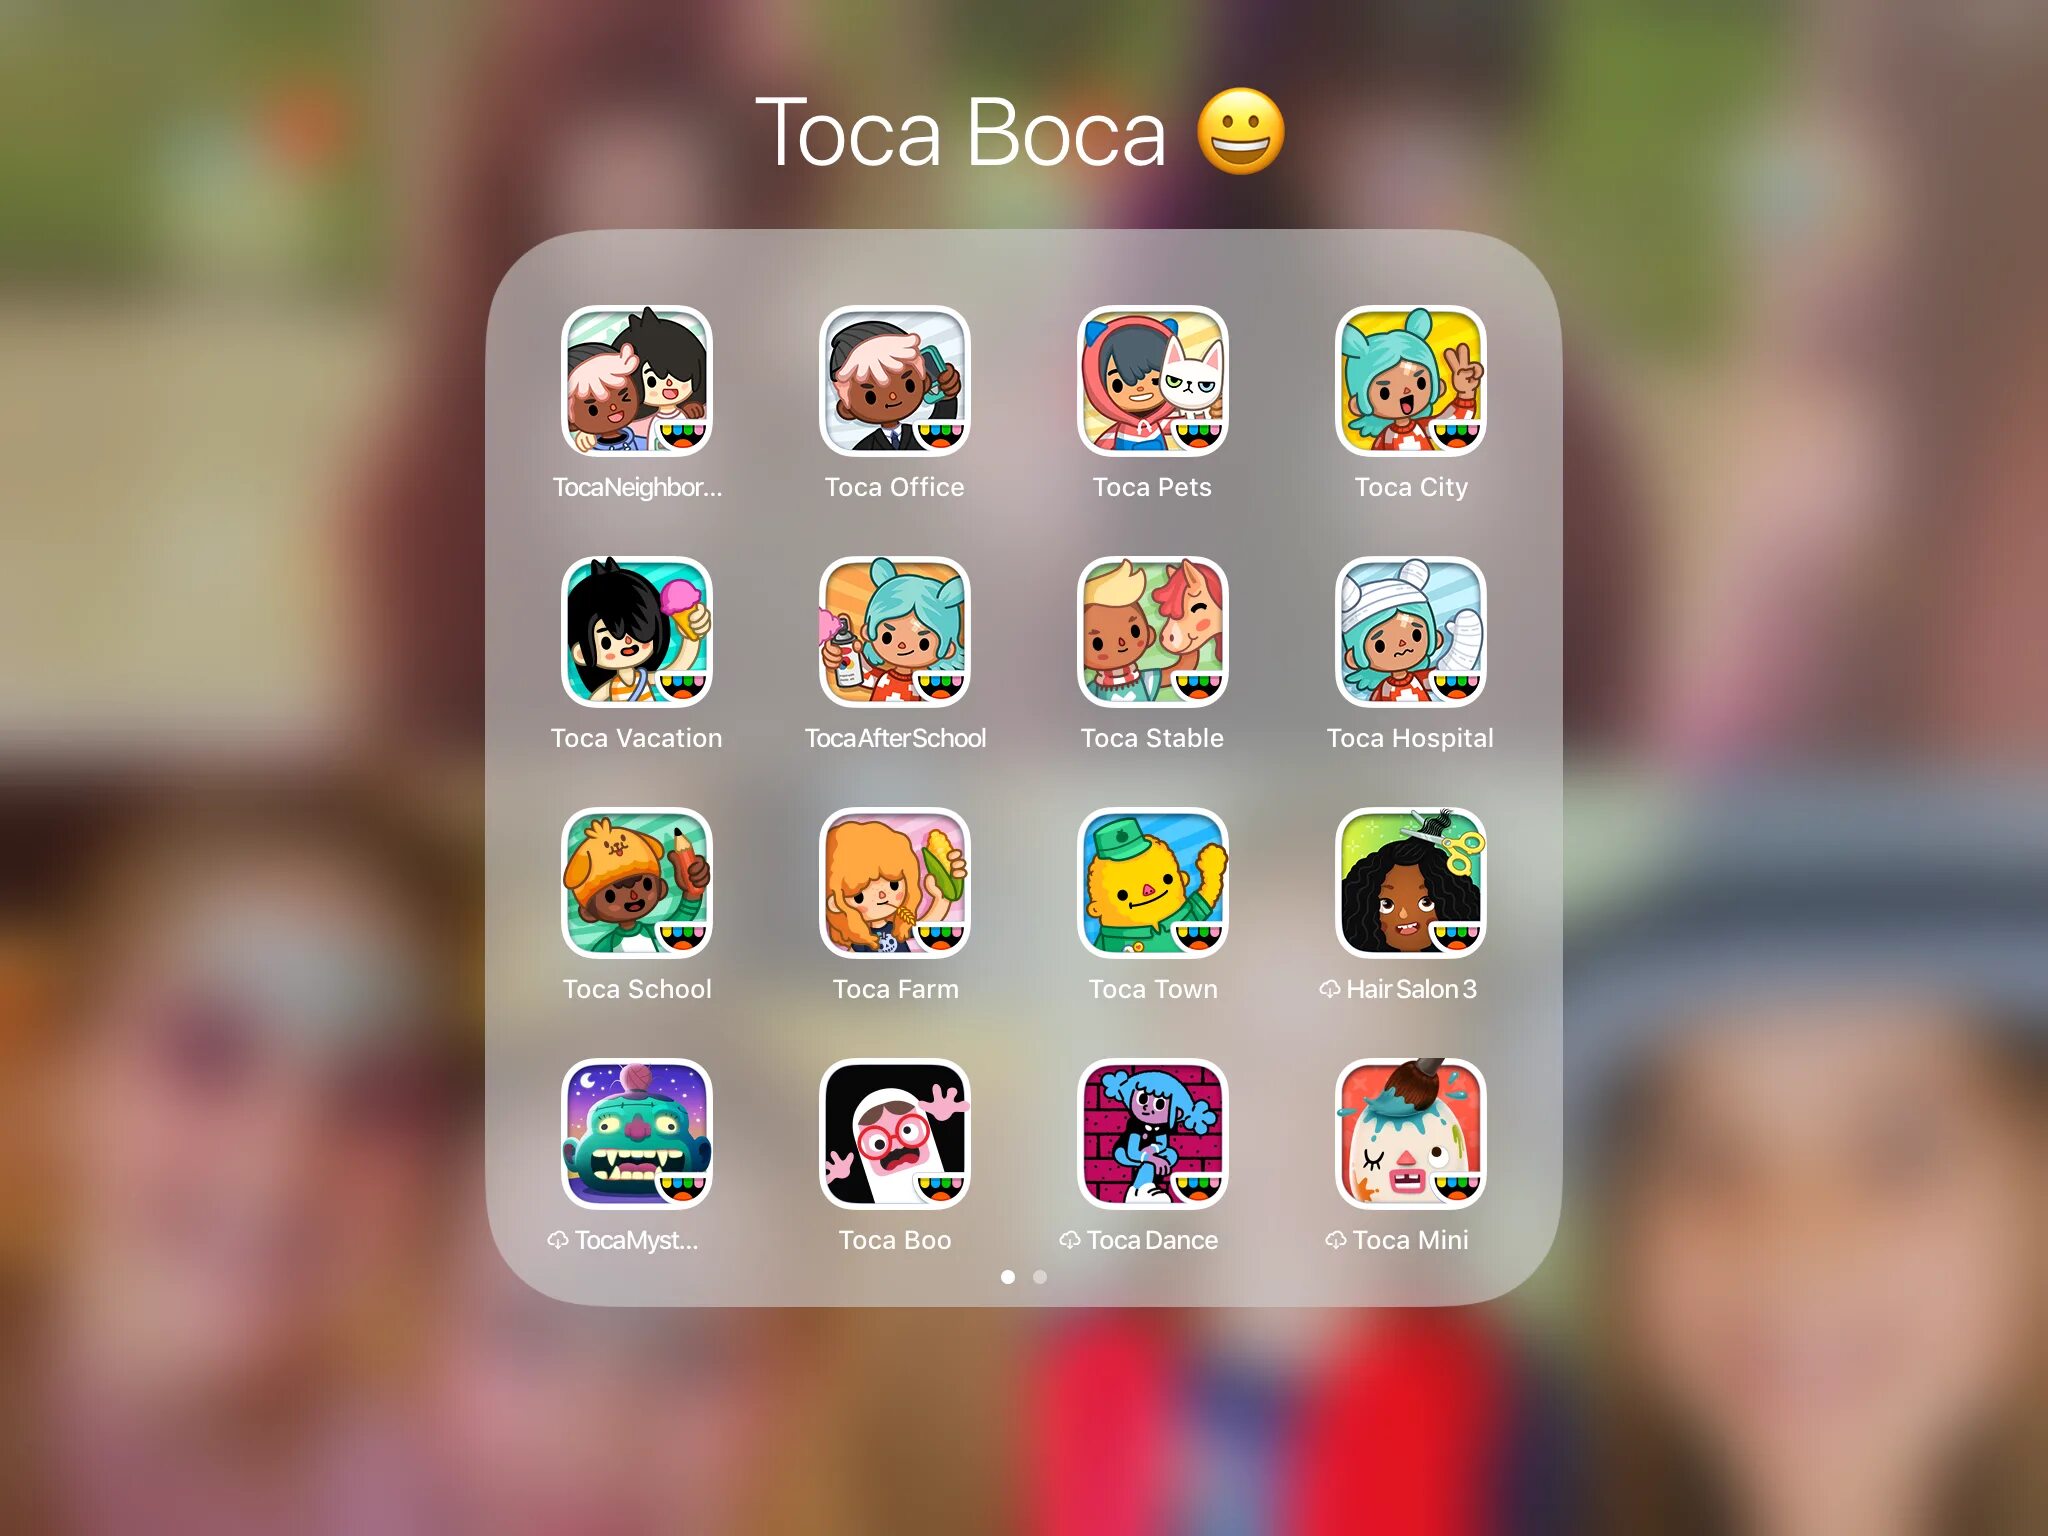 Как сделать бесплатные телефоны в токе. Тока бока. Игры toca boca. Идеи для персонажей в тока бока. Приложение с играми для айфона.